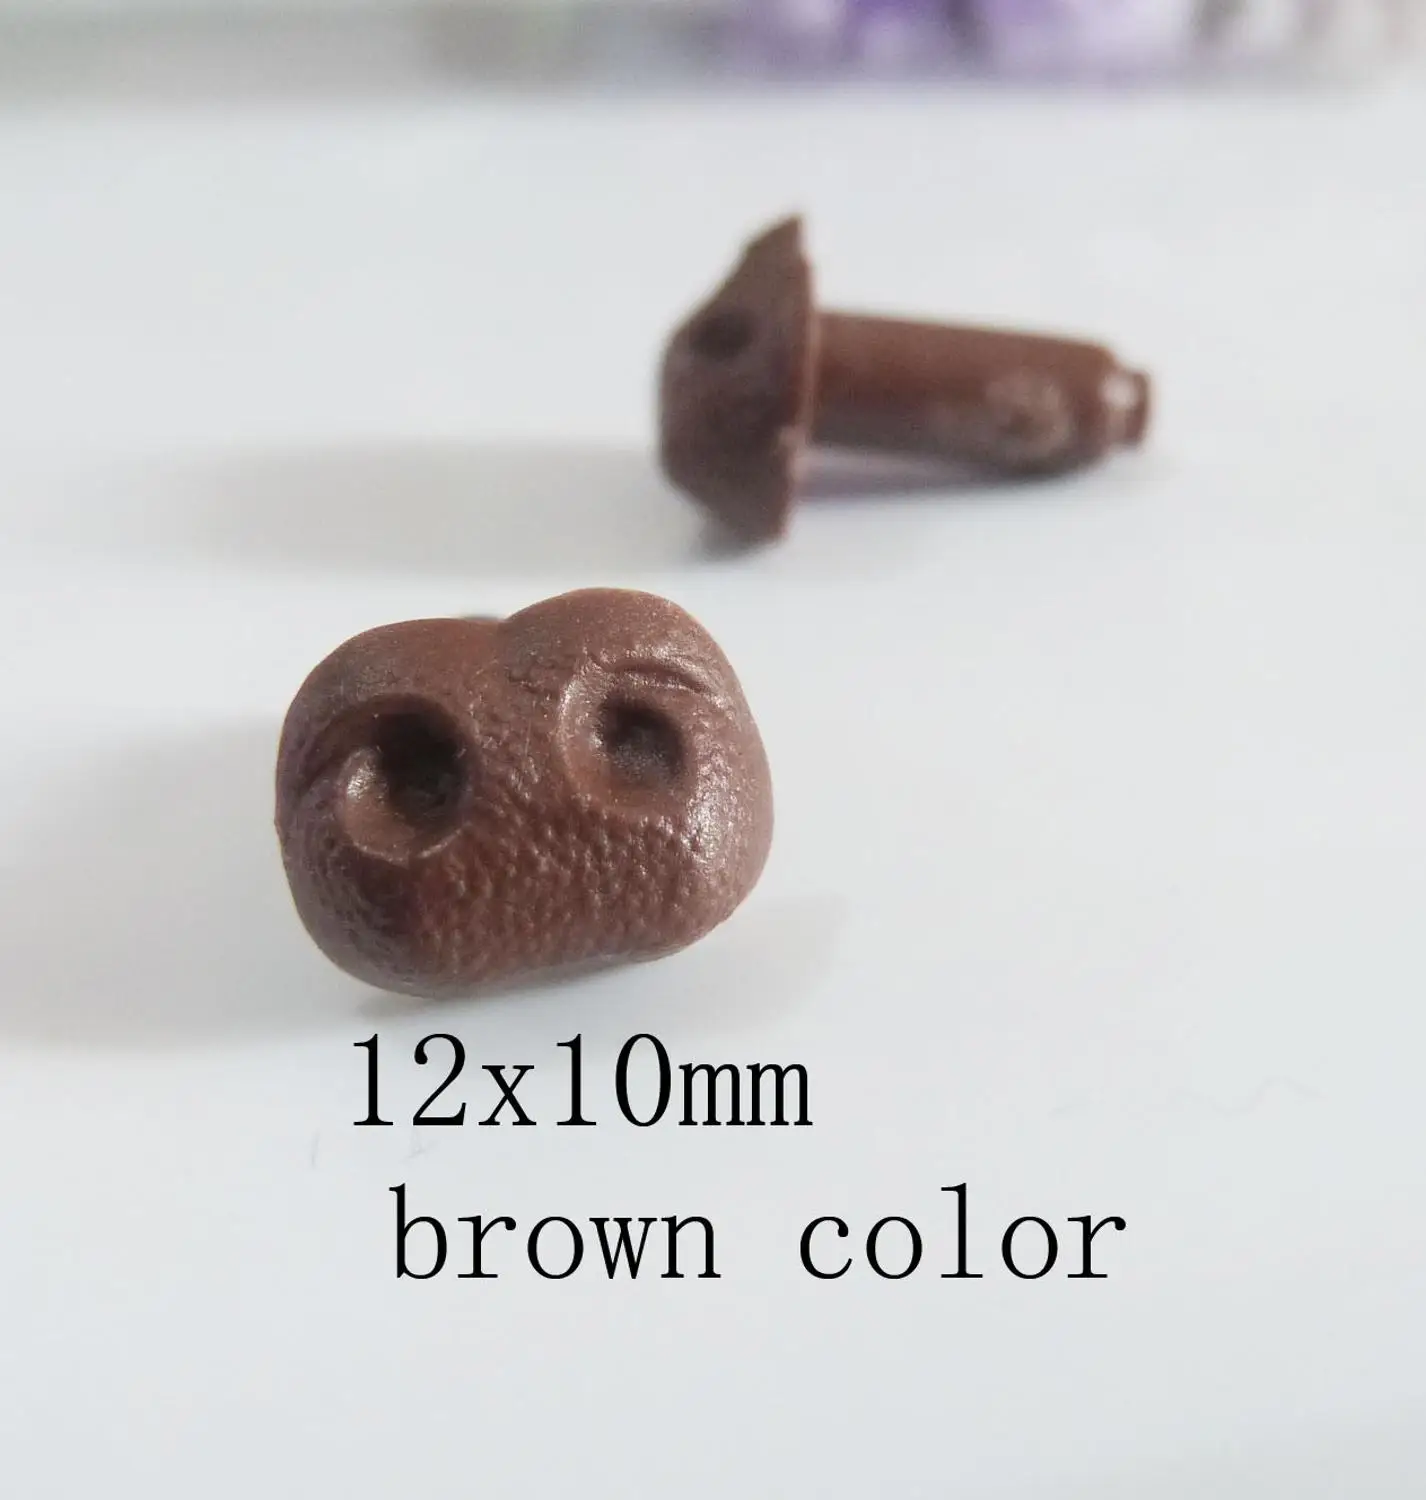 30 шт./лот 6x8 мм/8x10 мм/10x12 мм Гладкий стебель пластиковая игрушка нос животное нос без шайбы для diy кукла фурнитура-черный/коричневый/телесный цвет - Цвет: 10x12mm brown color